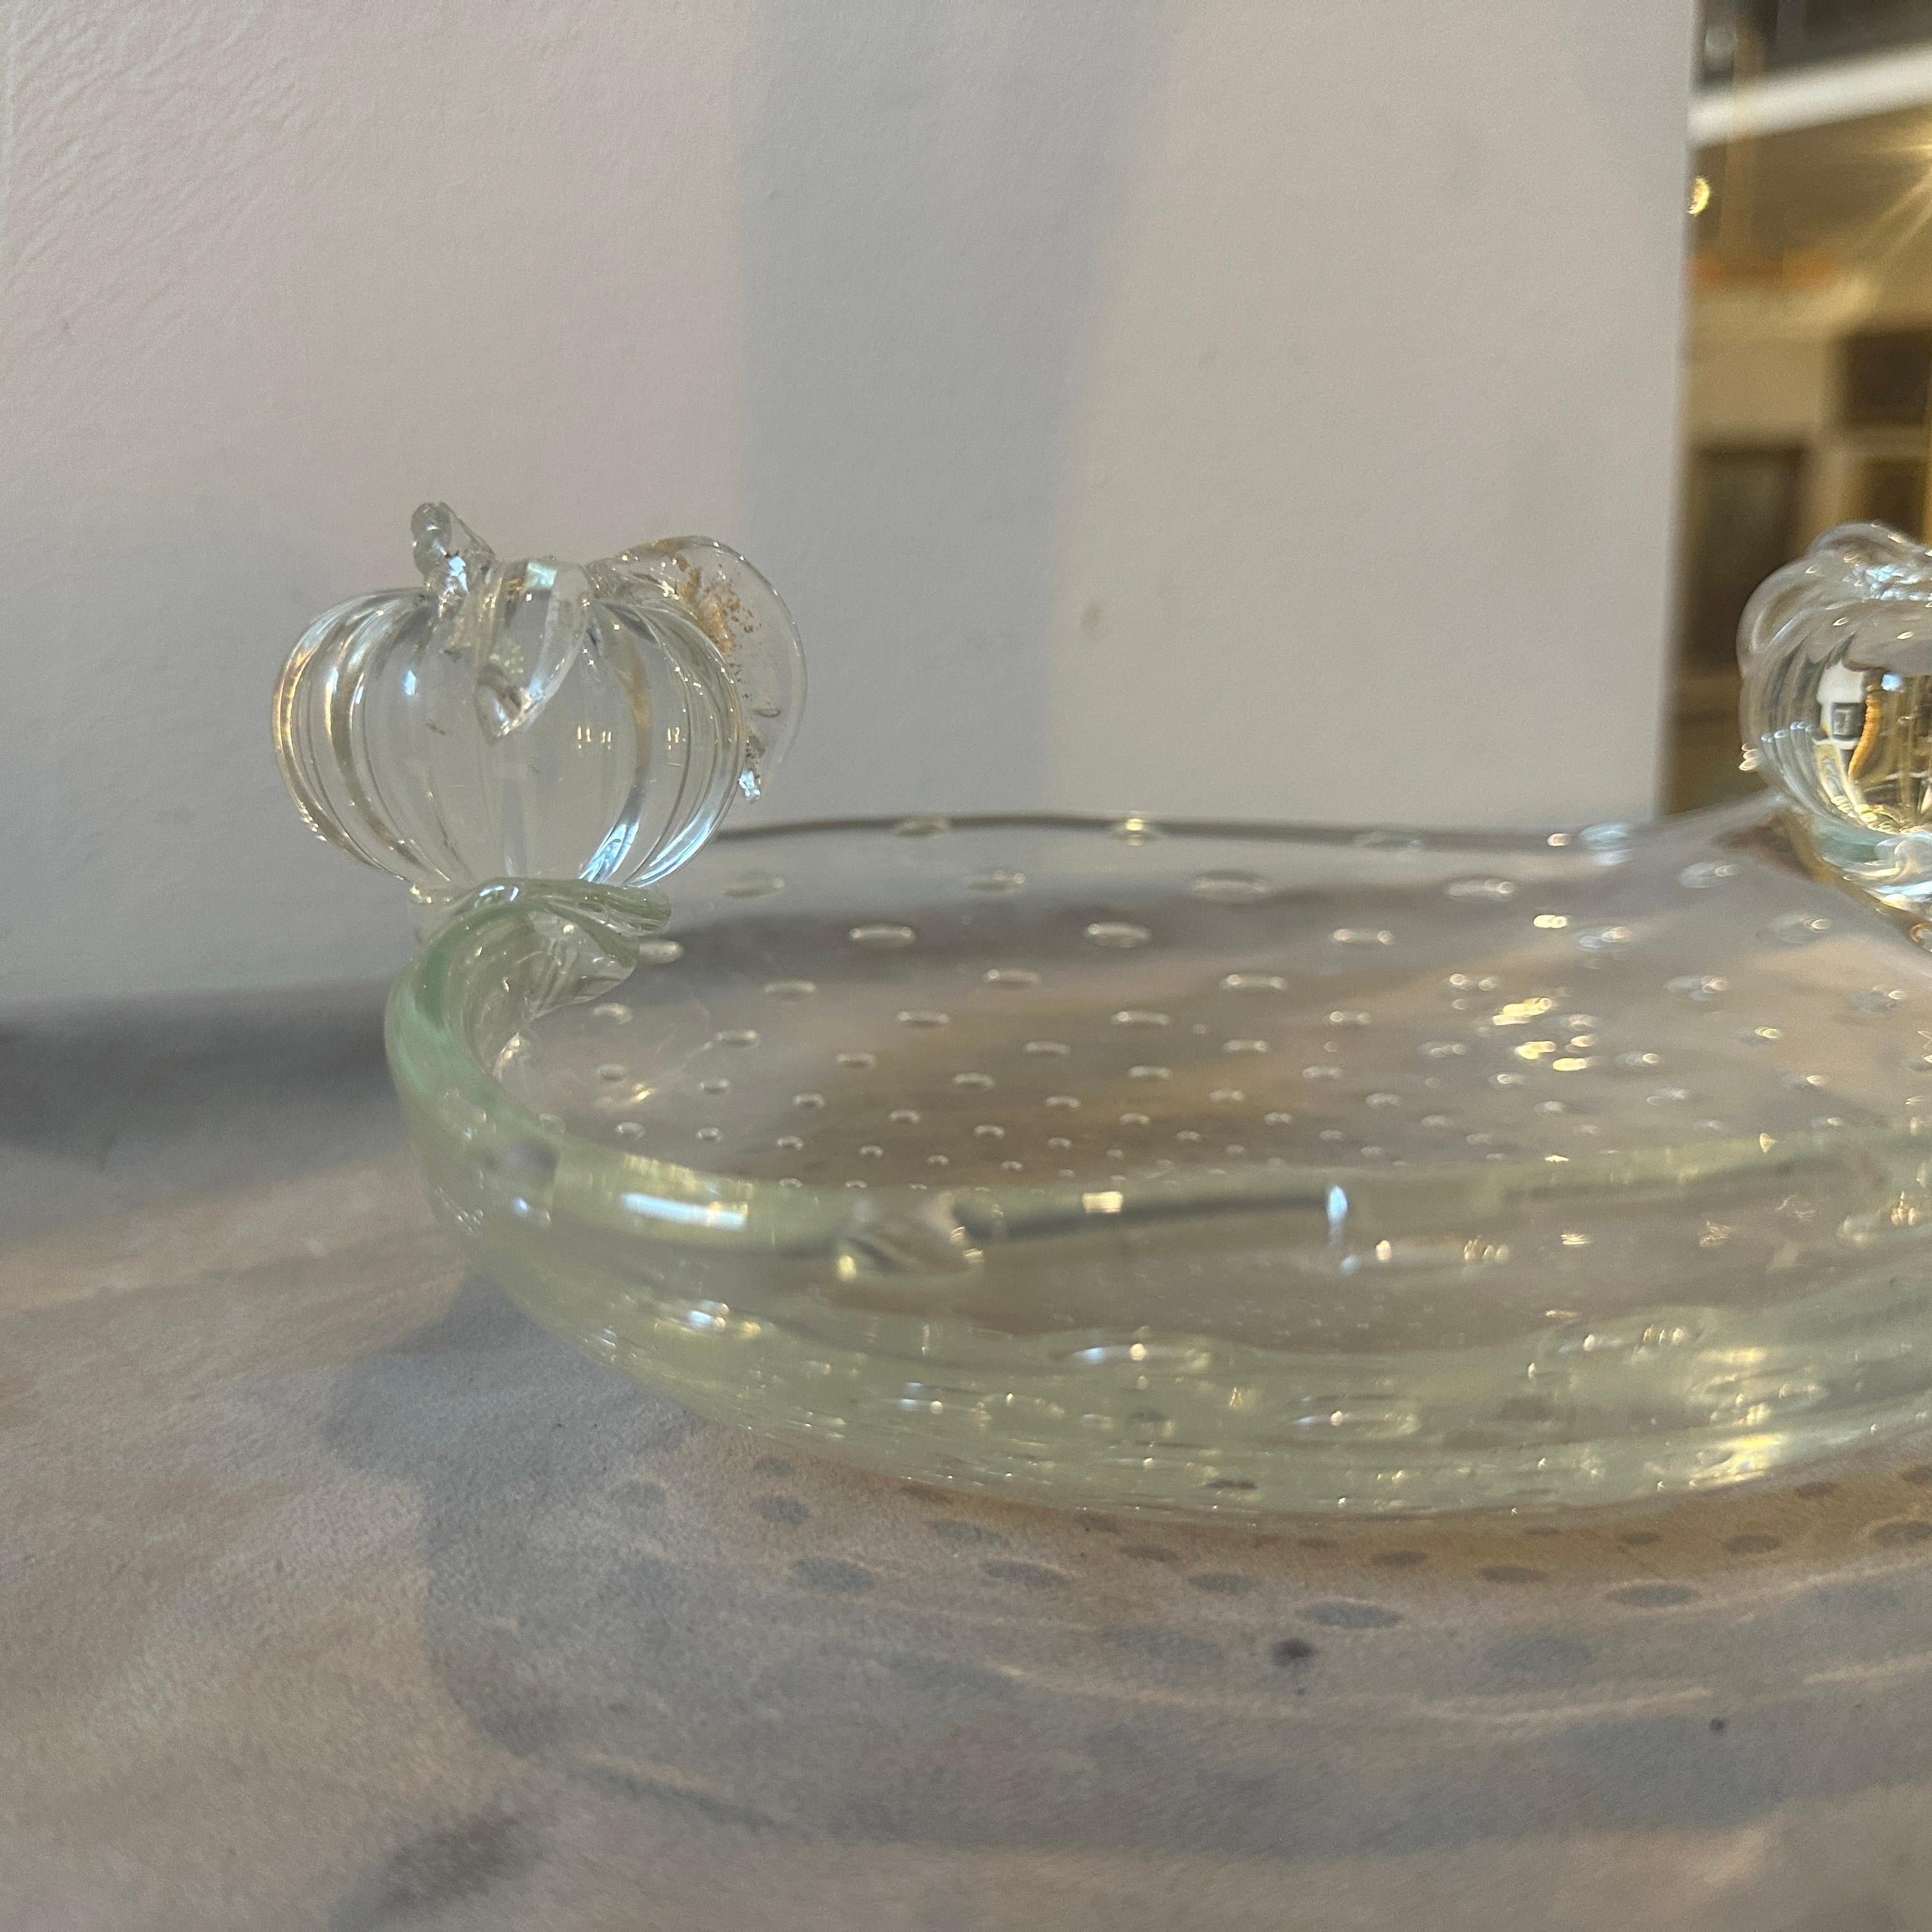 Eine Schale aus Murano-Glas, die in den fünfziger Jahren von Barovier in Venedig hergestellt wurde. Die ovale Schale hat zwei Früchte an den Seiten. Diese Schale ist ein schönes Beispiel für die exquisite Handwerkskunst, für die die Familie Barovier